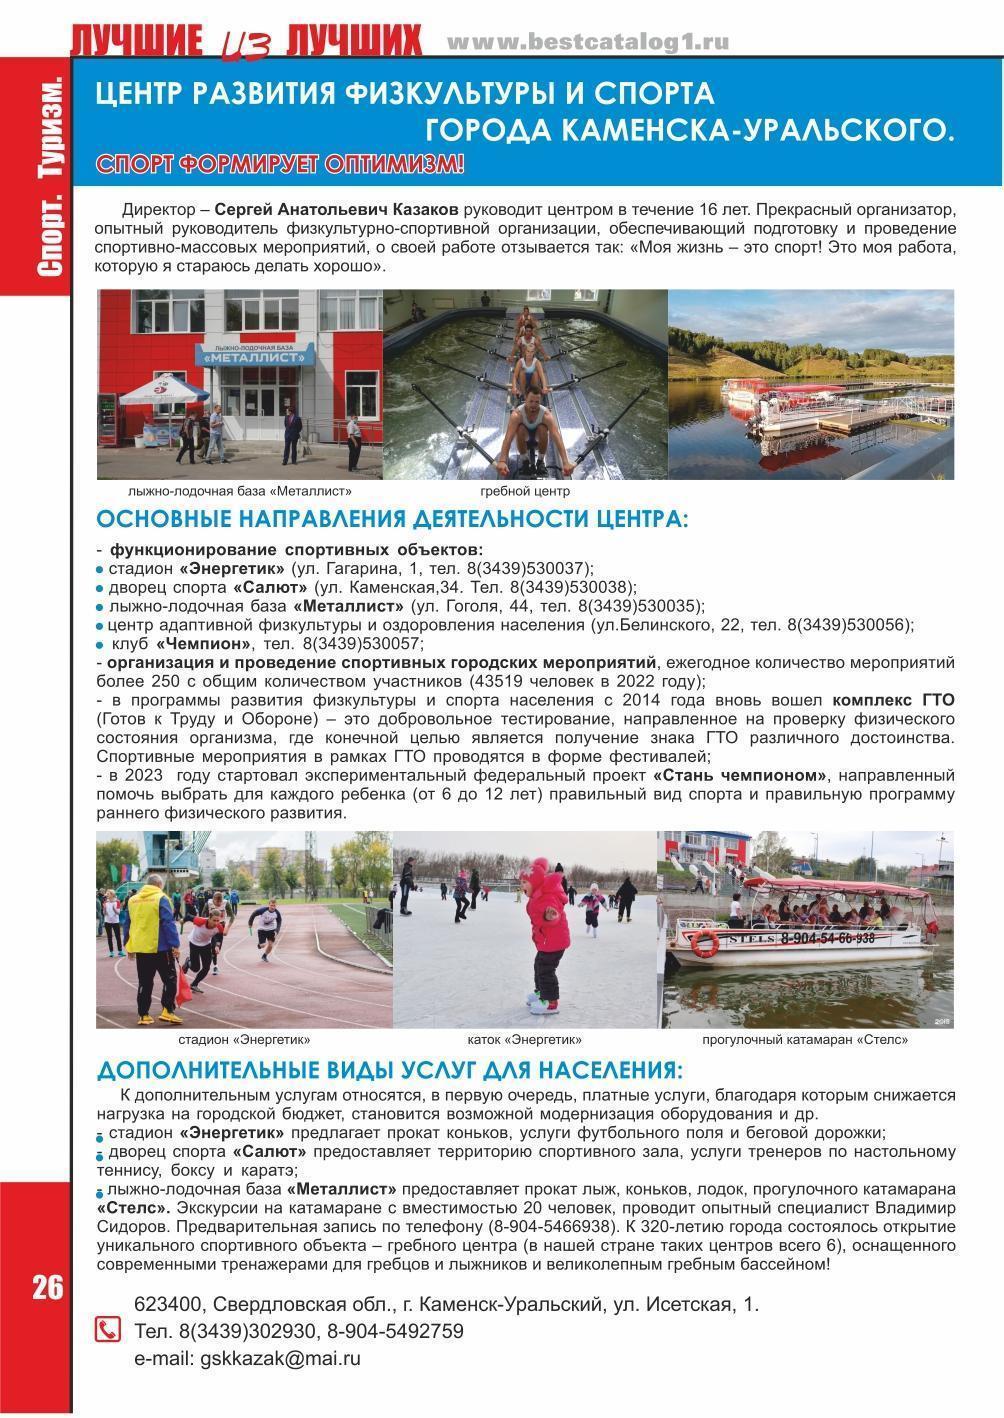 Центр развития физкультуры и спорта г. Каменска-Уральского